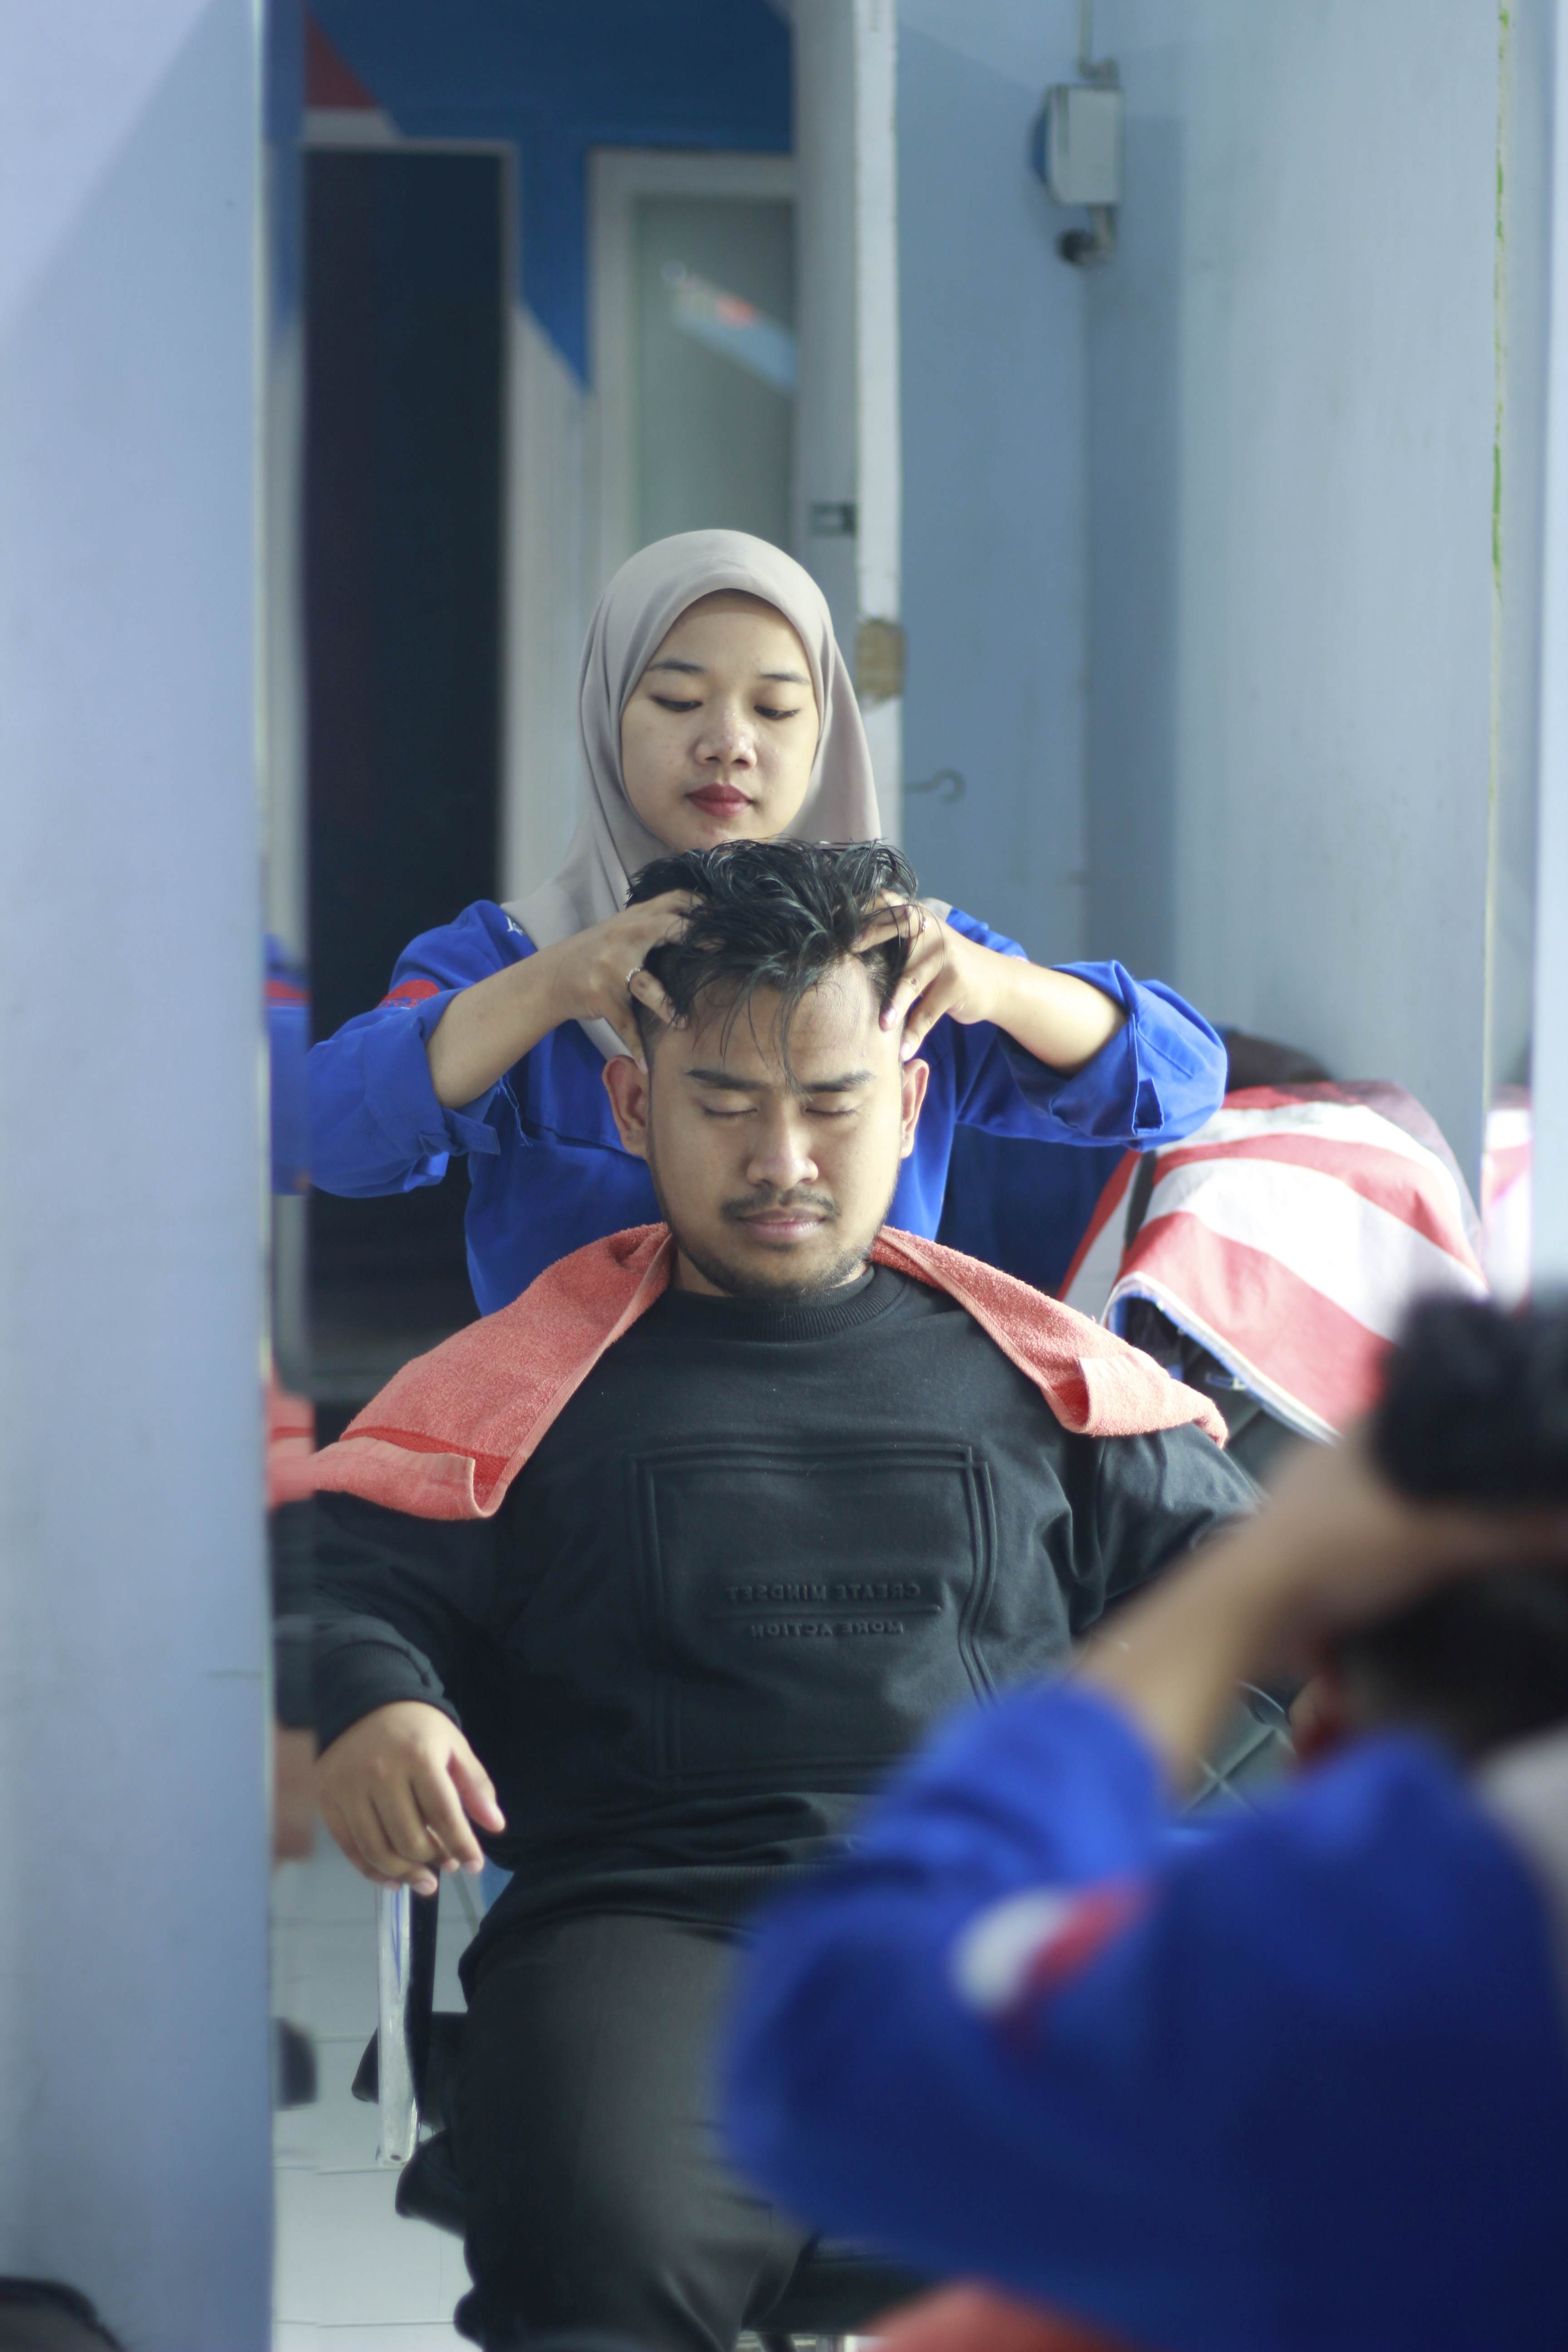 Rekomendasi Tempat Cukur Rambut Di Jl. Tumenggung Suryo Profesional